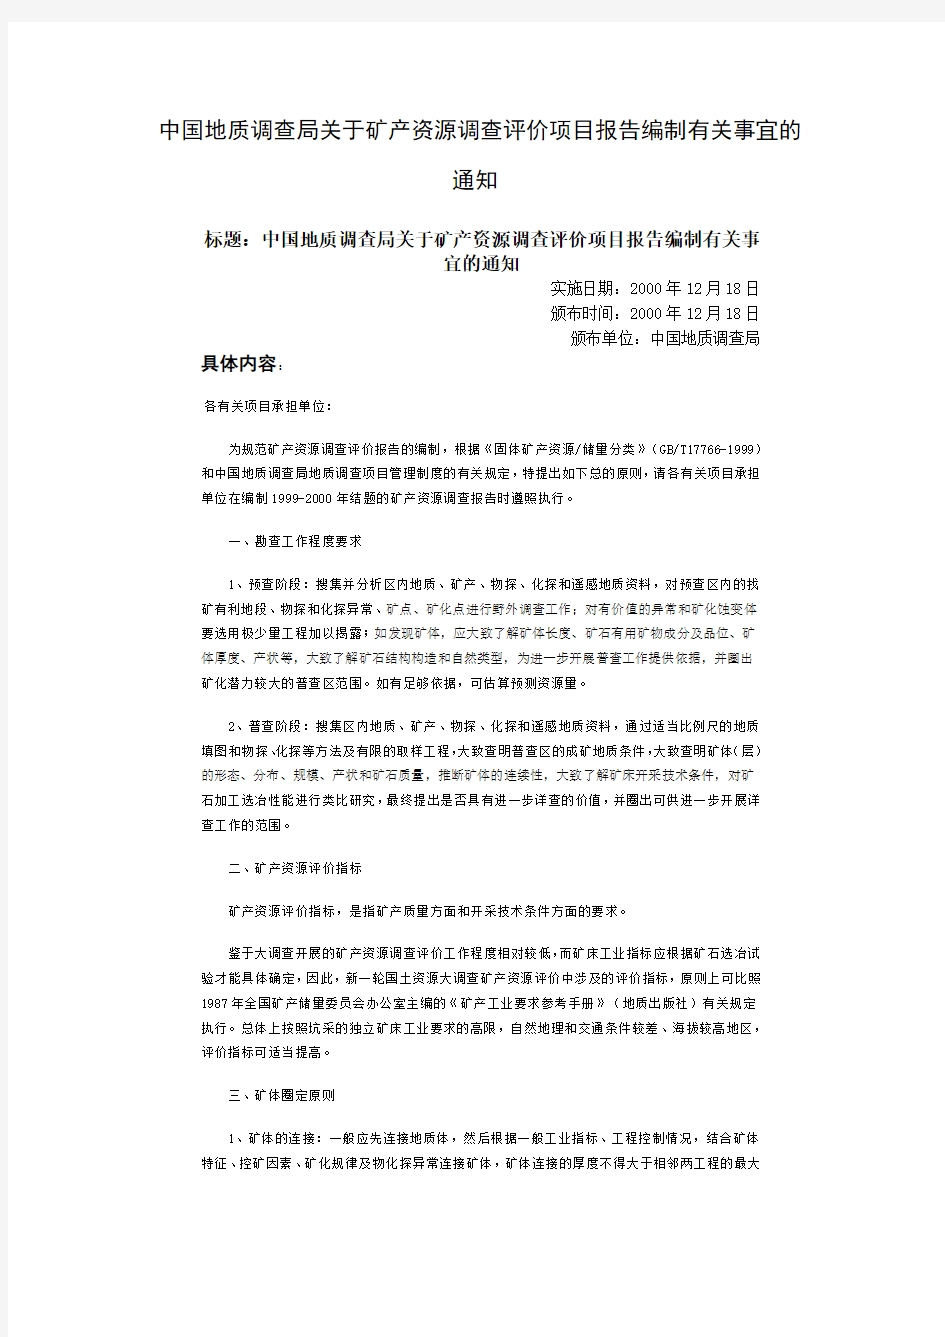 中国地质调查局关于矿产资源调查评价项目报告编制有关事宜的通知